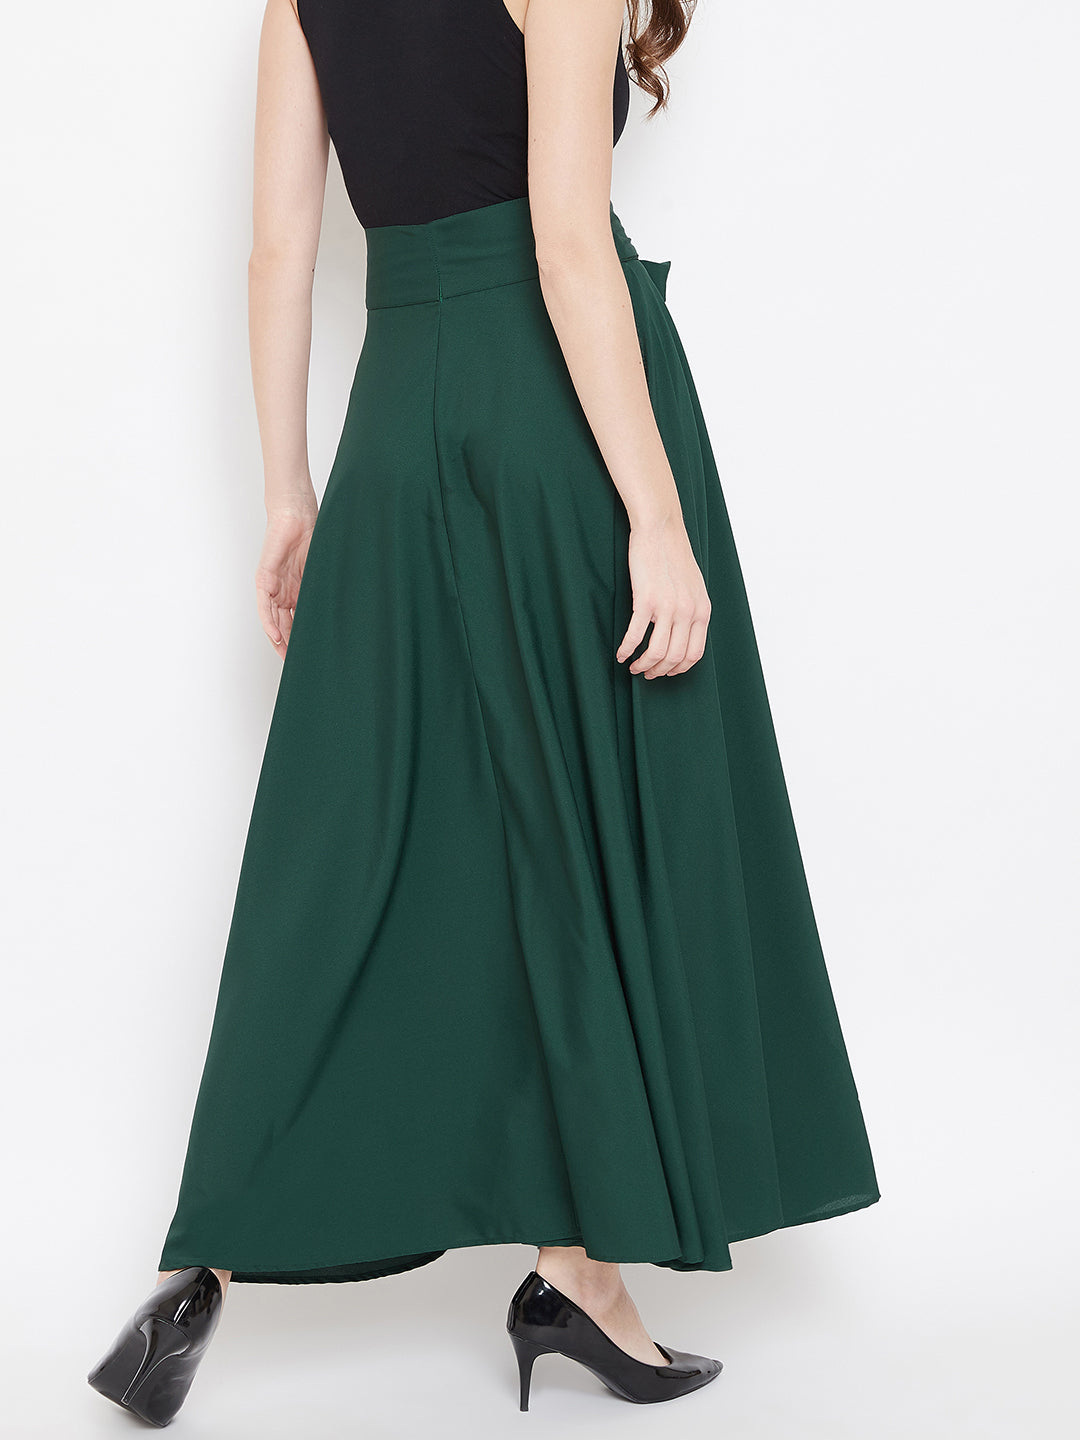 Berrylush Women Solid Green Waist Tie-Up High Waist Flared Maxi Skirt